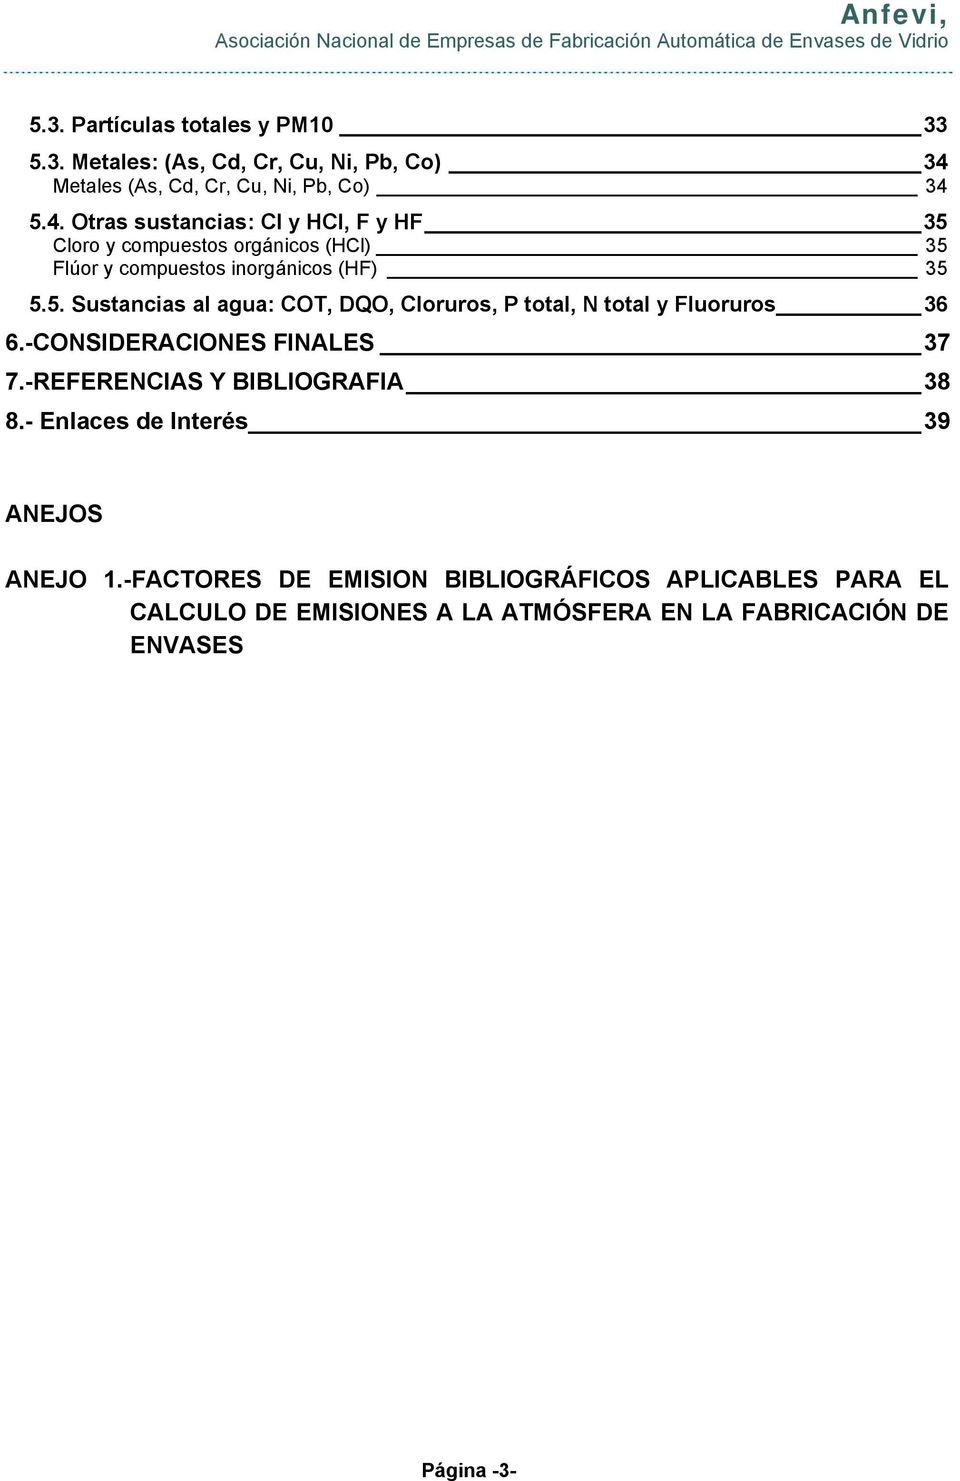 5.4. Otras sustancias: Cl y HCl, F y HF 35 Cloro y compuestos orgánicos (HCl) 35 Flúor y compuestos inorgánicos (HF) 35 5.5. Sustancias al agua: COT, DQO, Cloruros, P total, N total y Fluoruros 36 6.